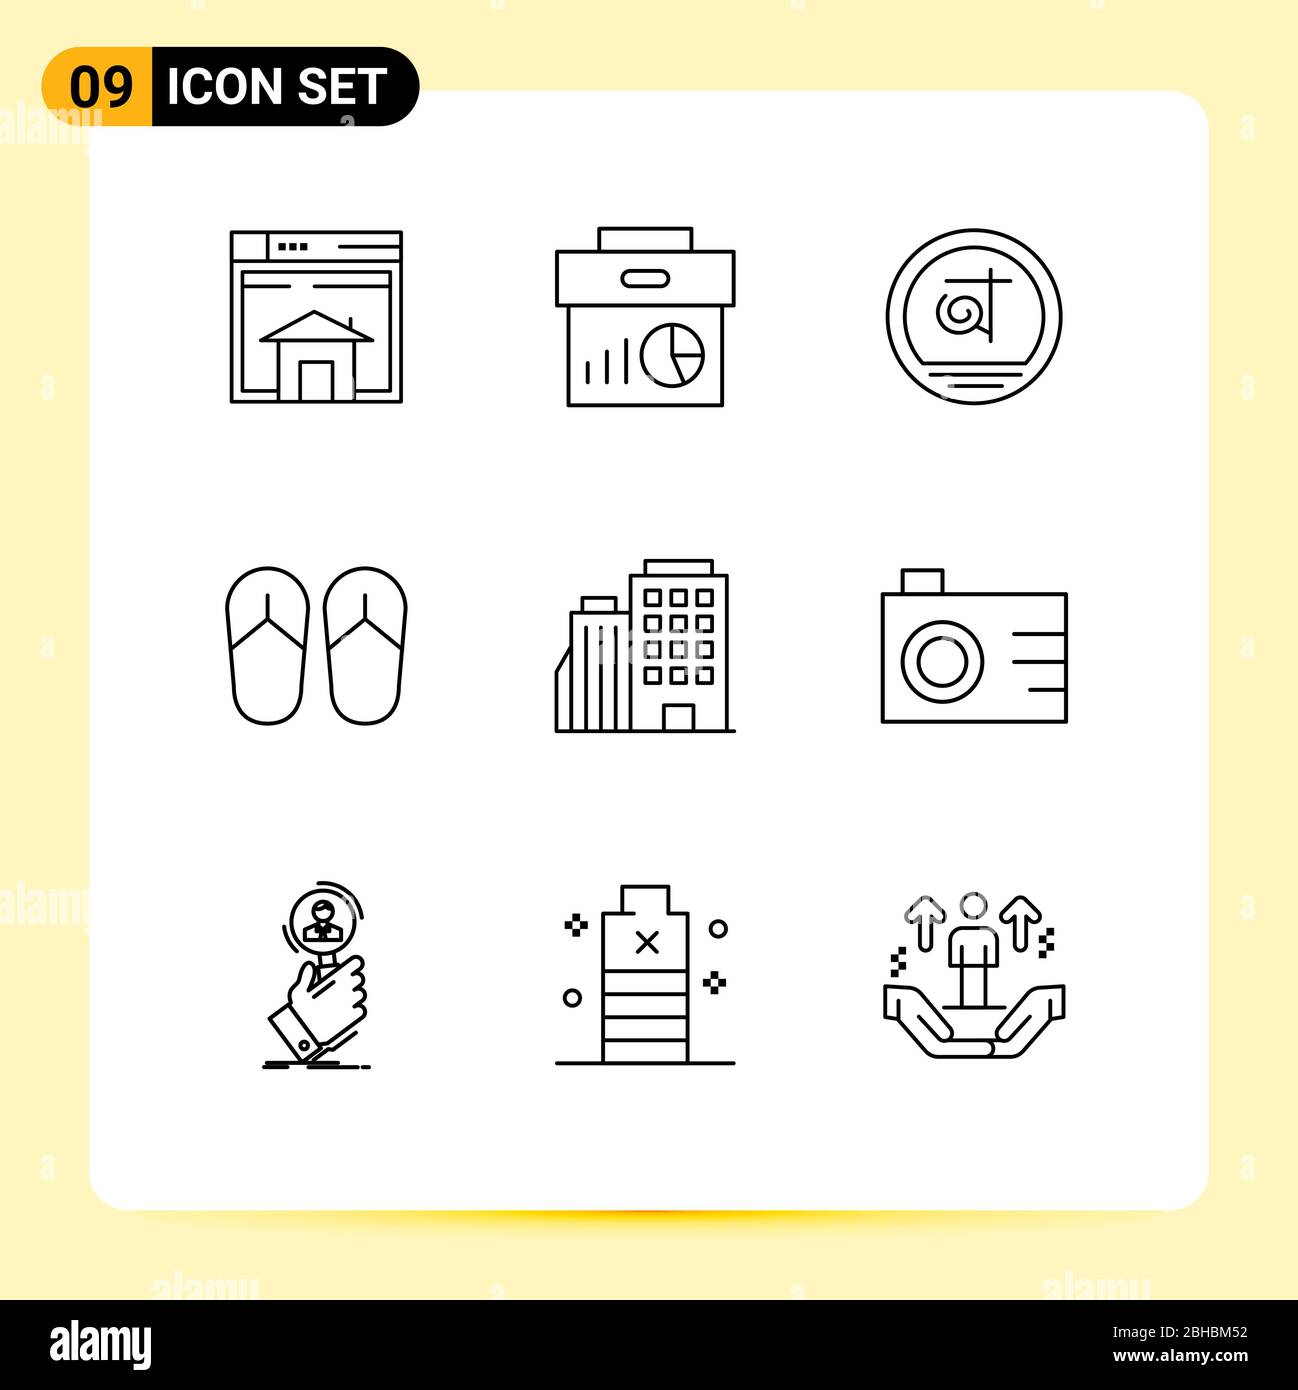 9 icone creative segni moderni e simboli di sandalo, spiaggia, economia, affari, bangladesh elementi di disegno vettoriale editabili Illustrazione Vettoriale